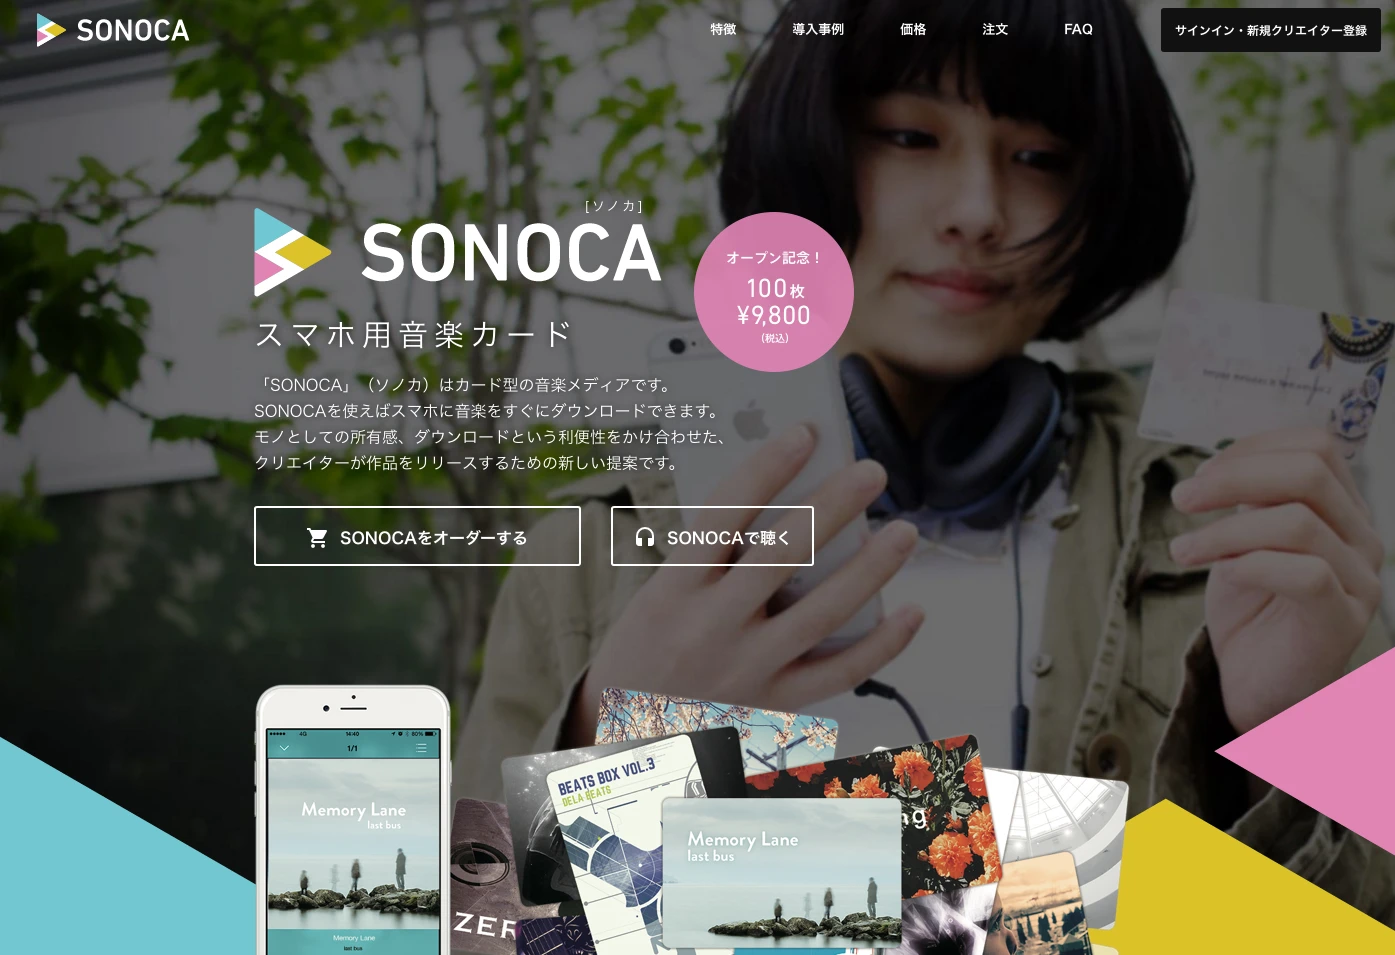 スマホ用カード型音楽メディア「SONOCA」 1枚98円でオーダー開始